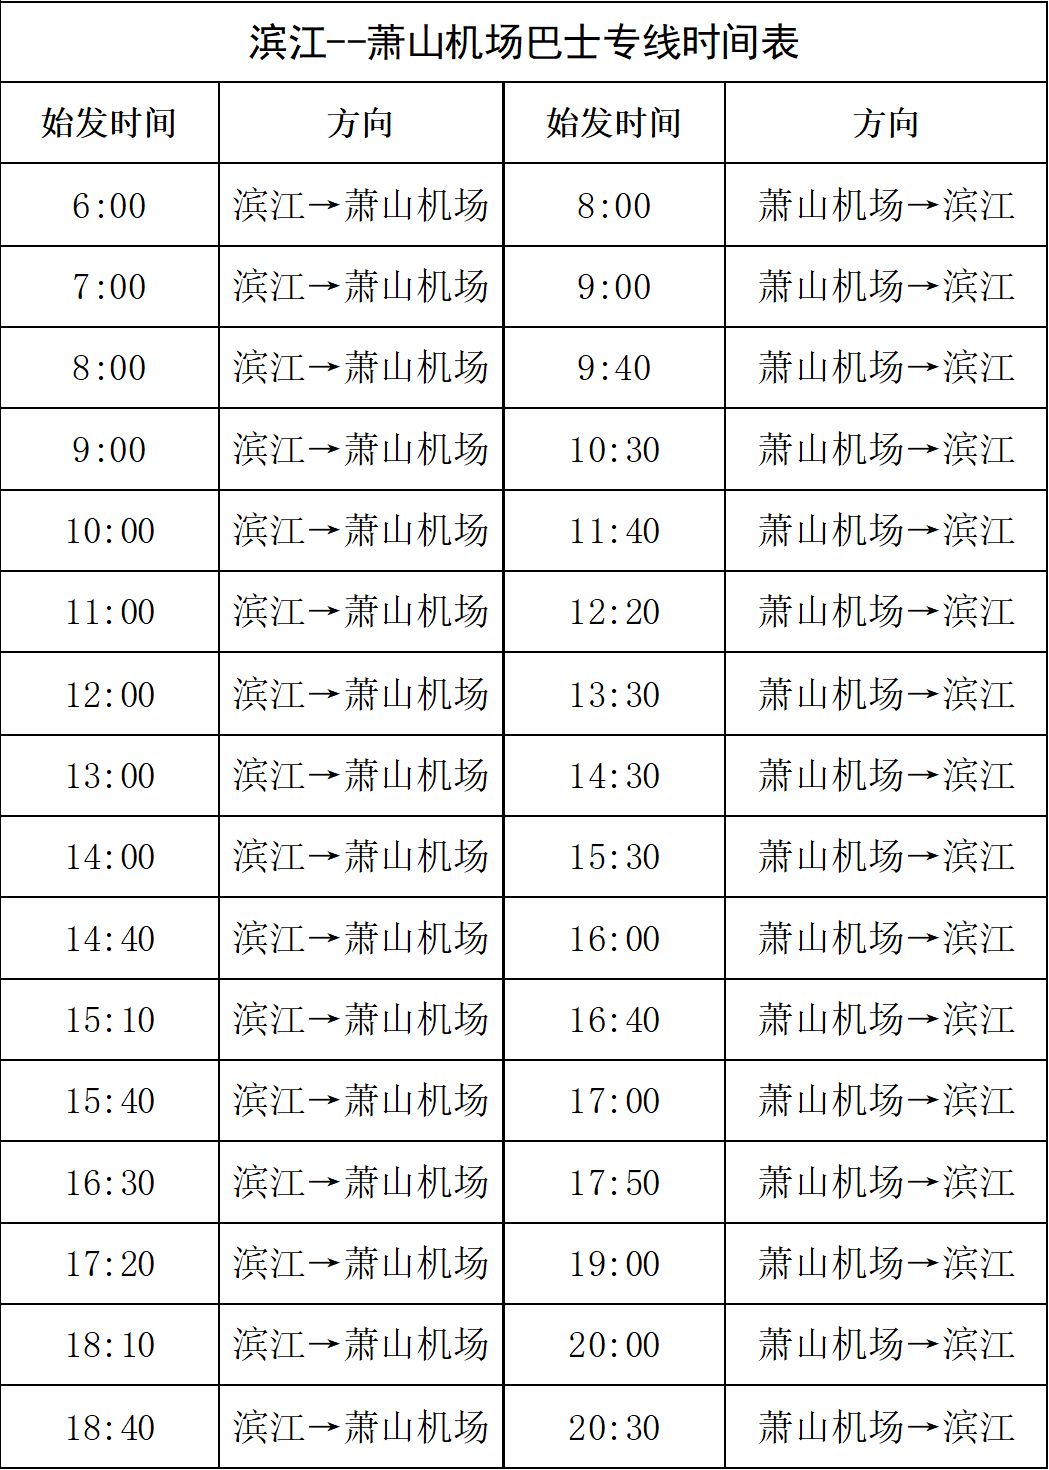 滨江至萧山机场巴士增加班次啦快看最新时刻表